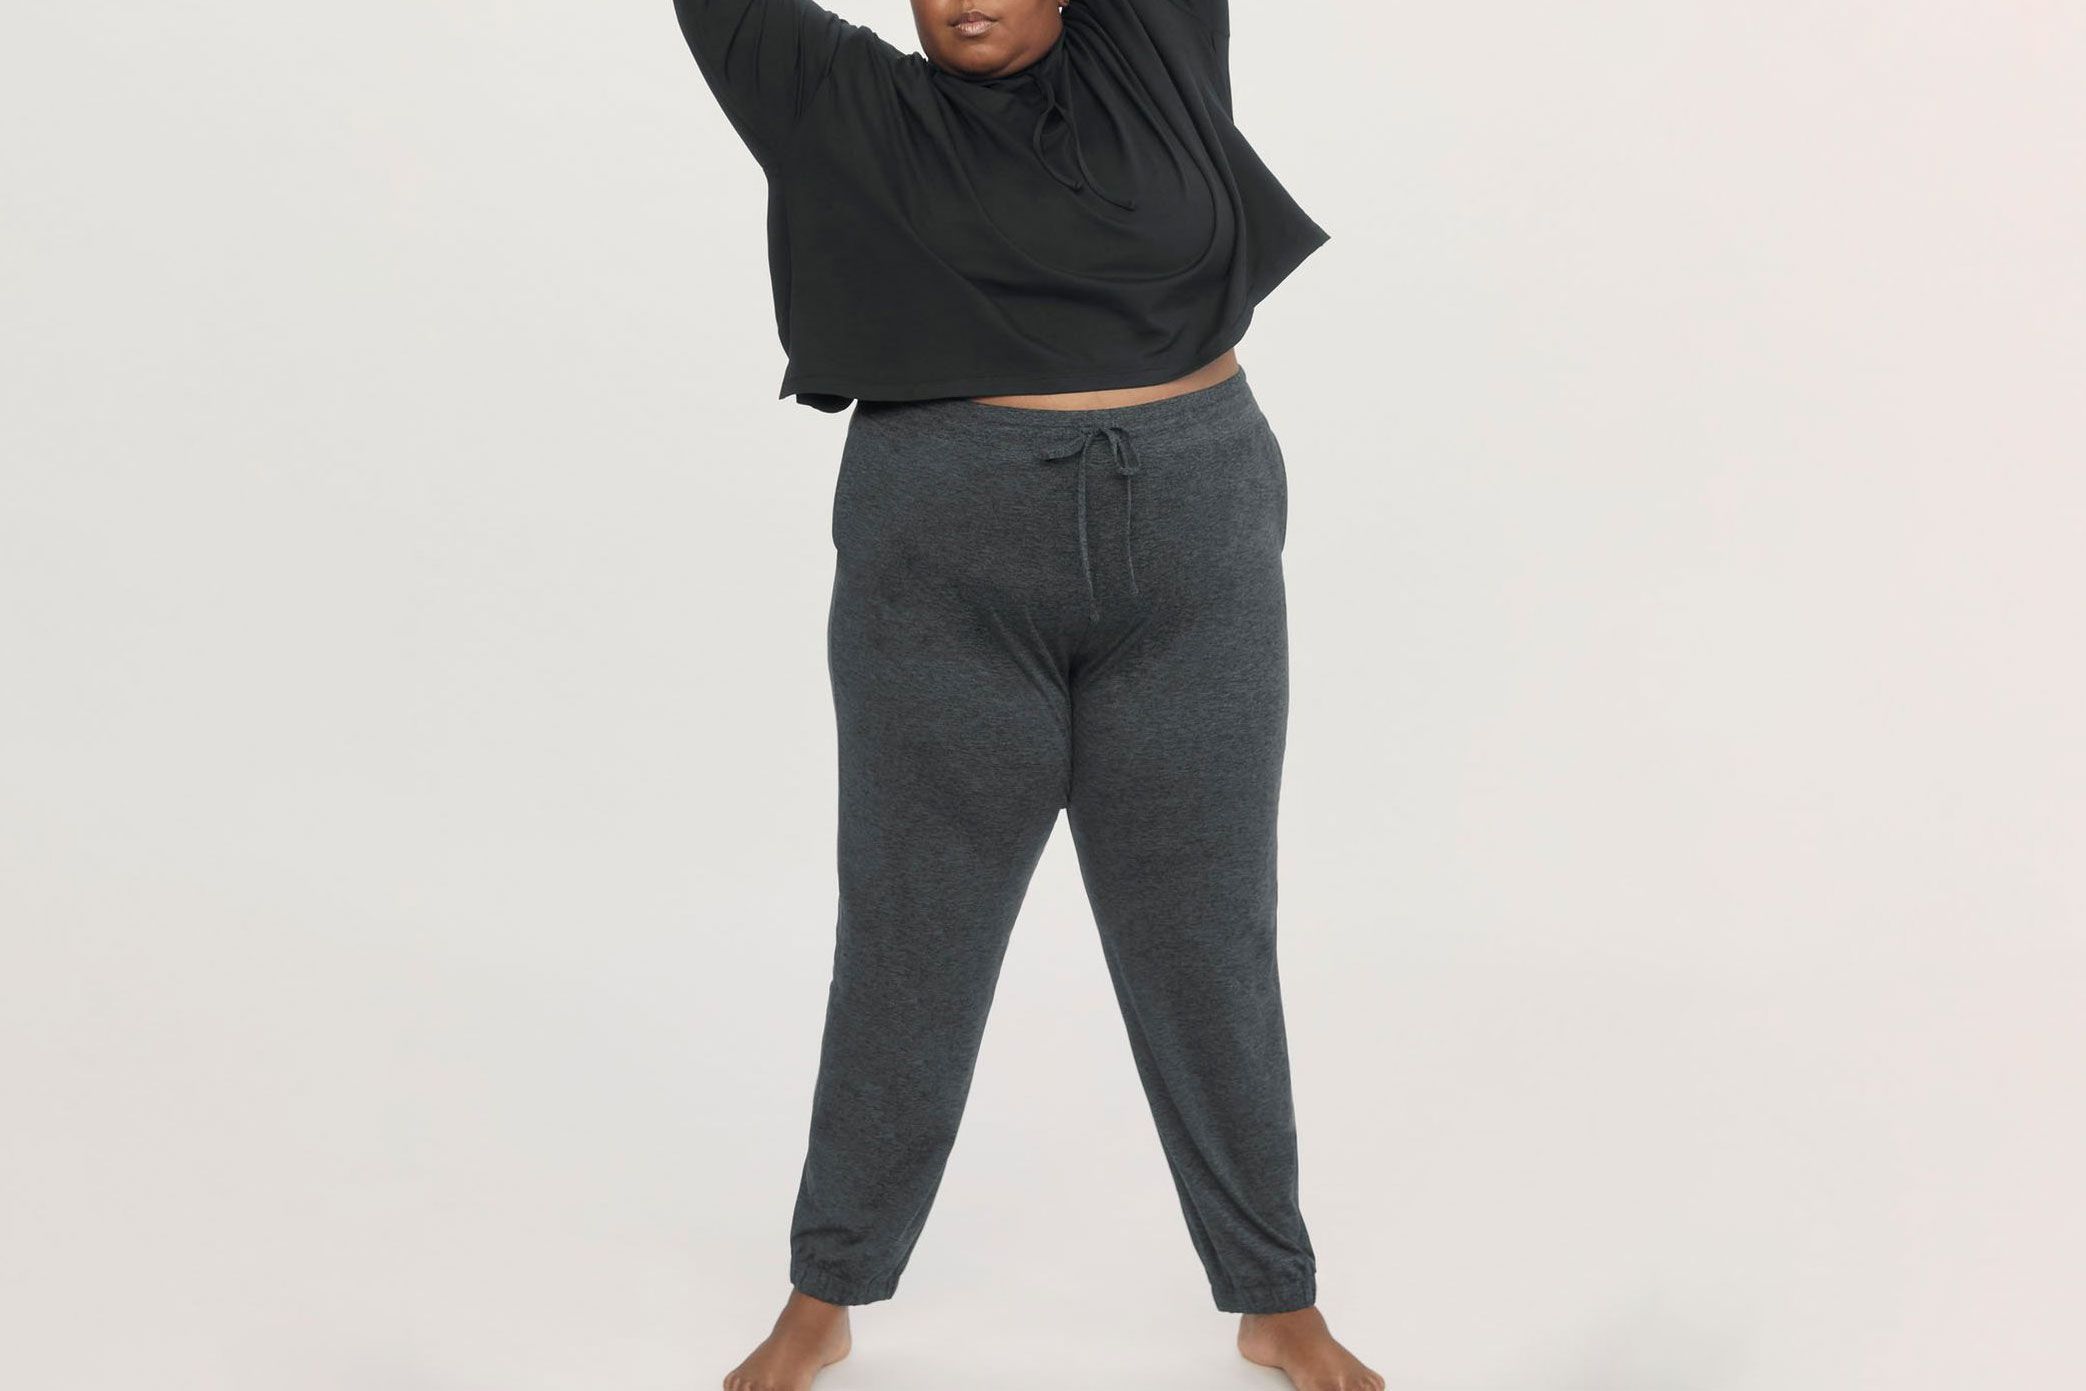  Women's Plus Size Super Soft Clinched Sweatpants (Grey